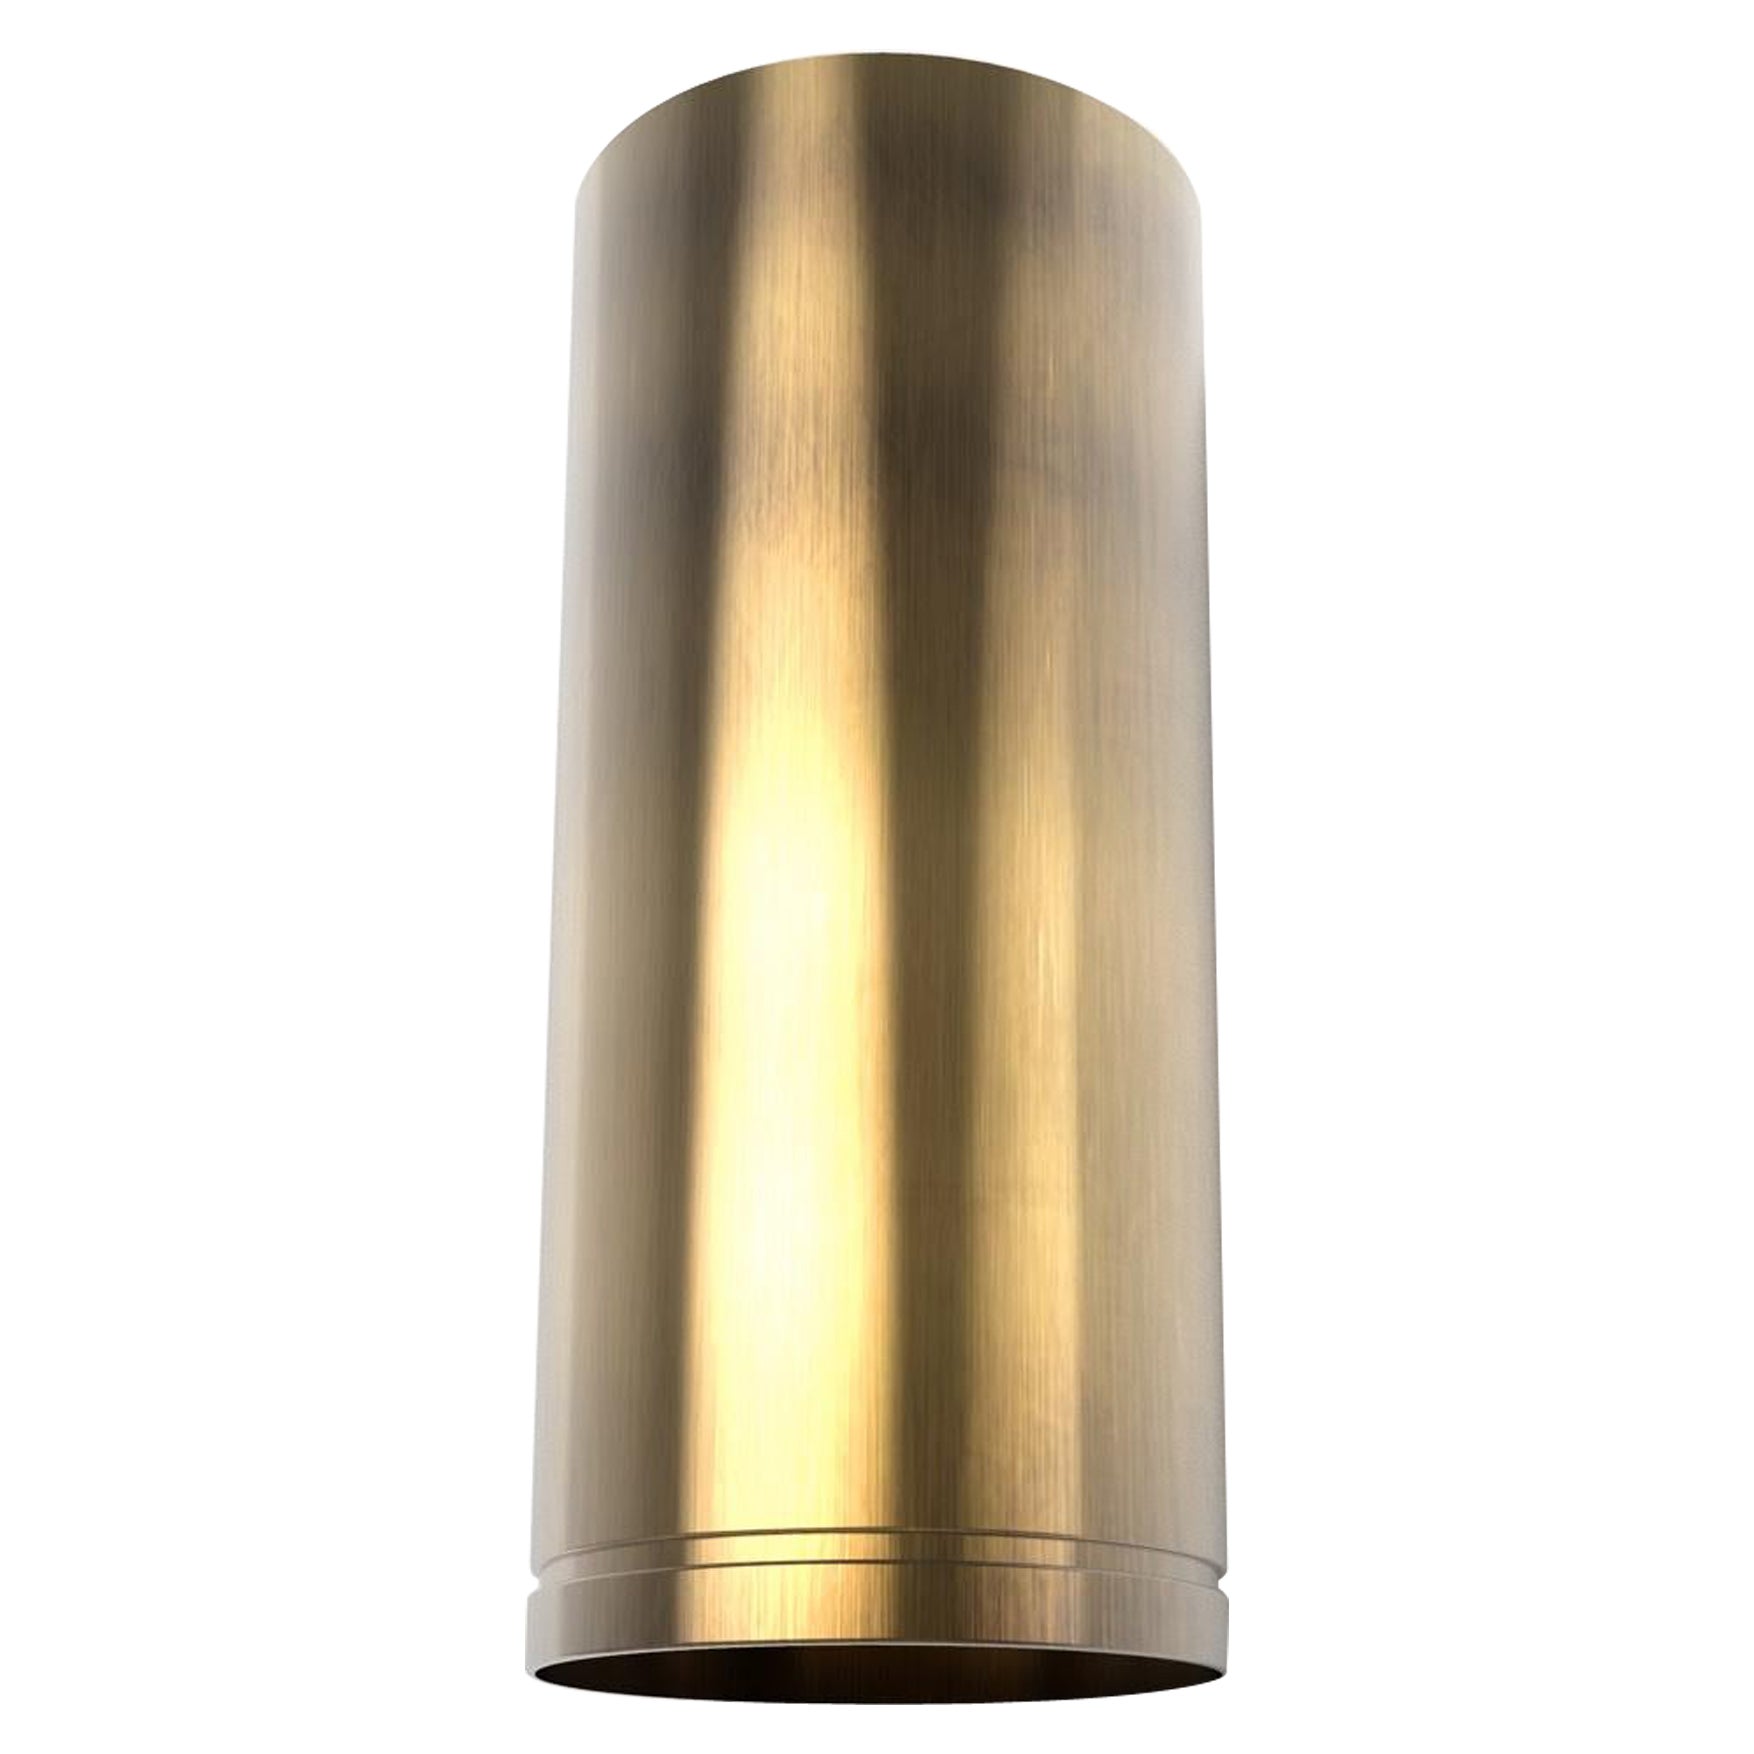 Brass Cylinder Range Hood - OLIVIA 2.0 - Custom For Sale